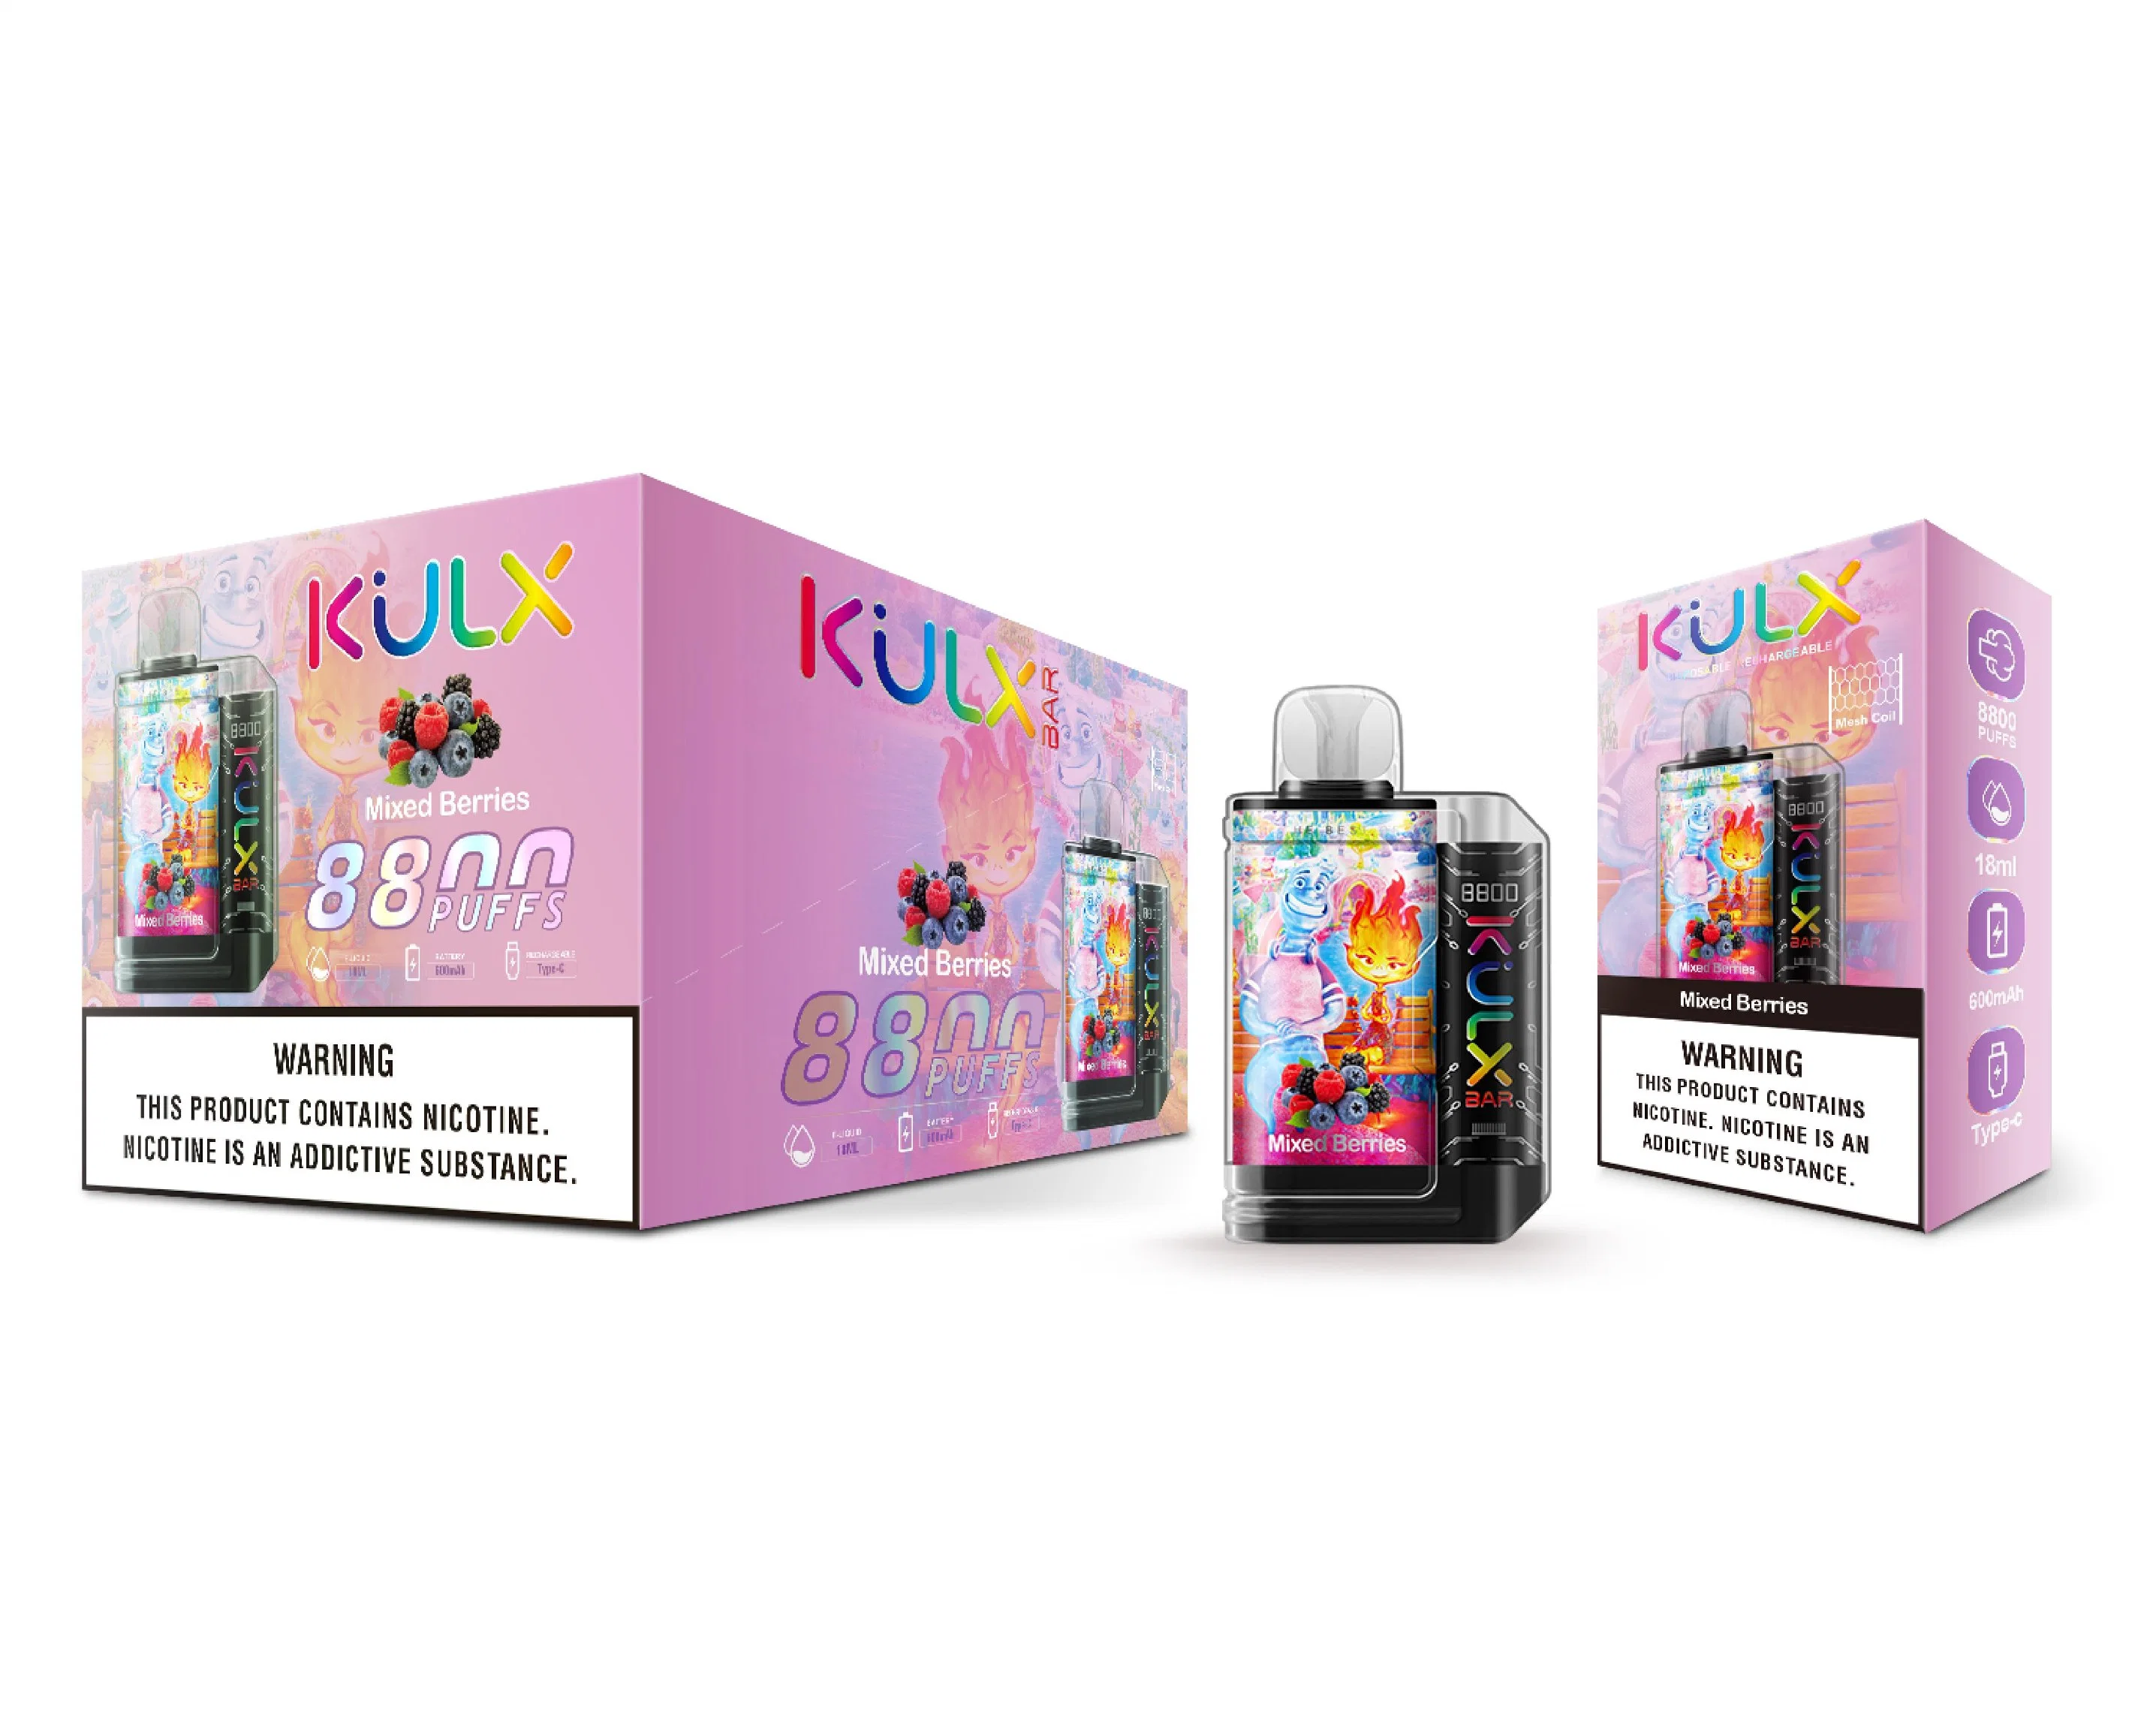 أسعار المصنع الأصلي للمعدة (OEM) Kulx Bar 8800 Puls Atomotine Mini طلب شراء موزع السجائر الإلكترونية حزمة دخان Vape الكهربائي التي يمكن التخلص منها